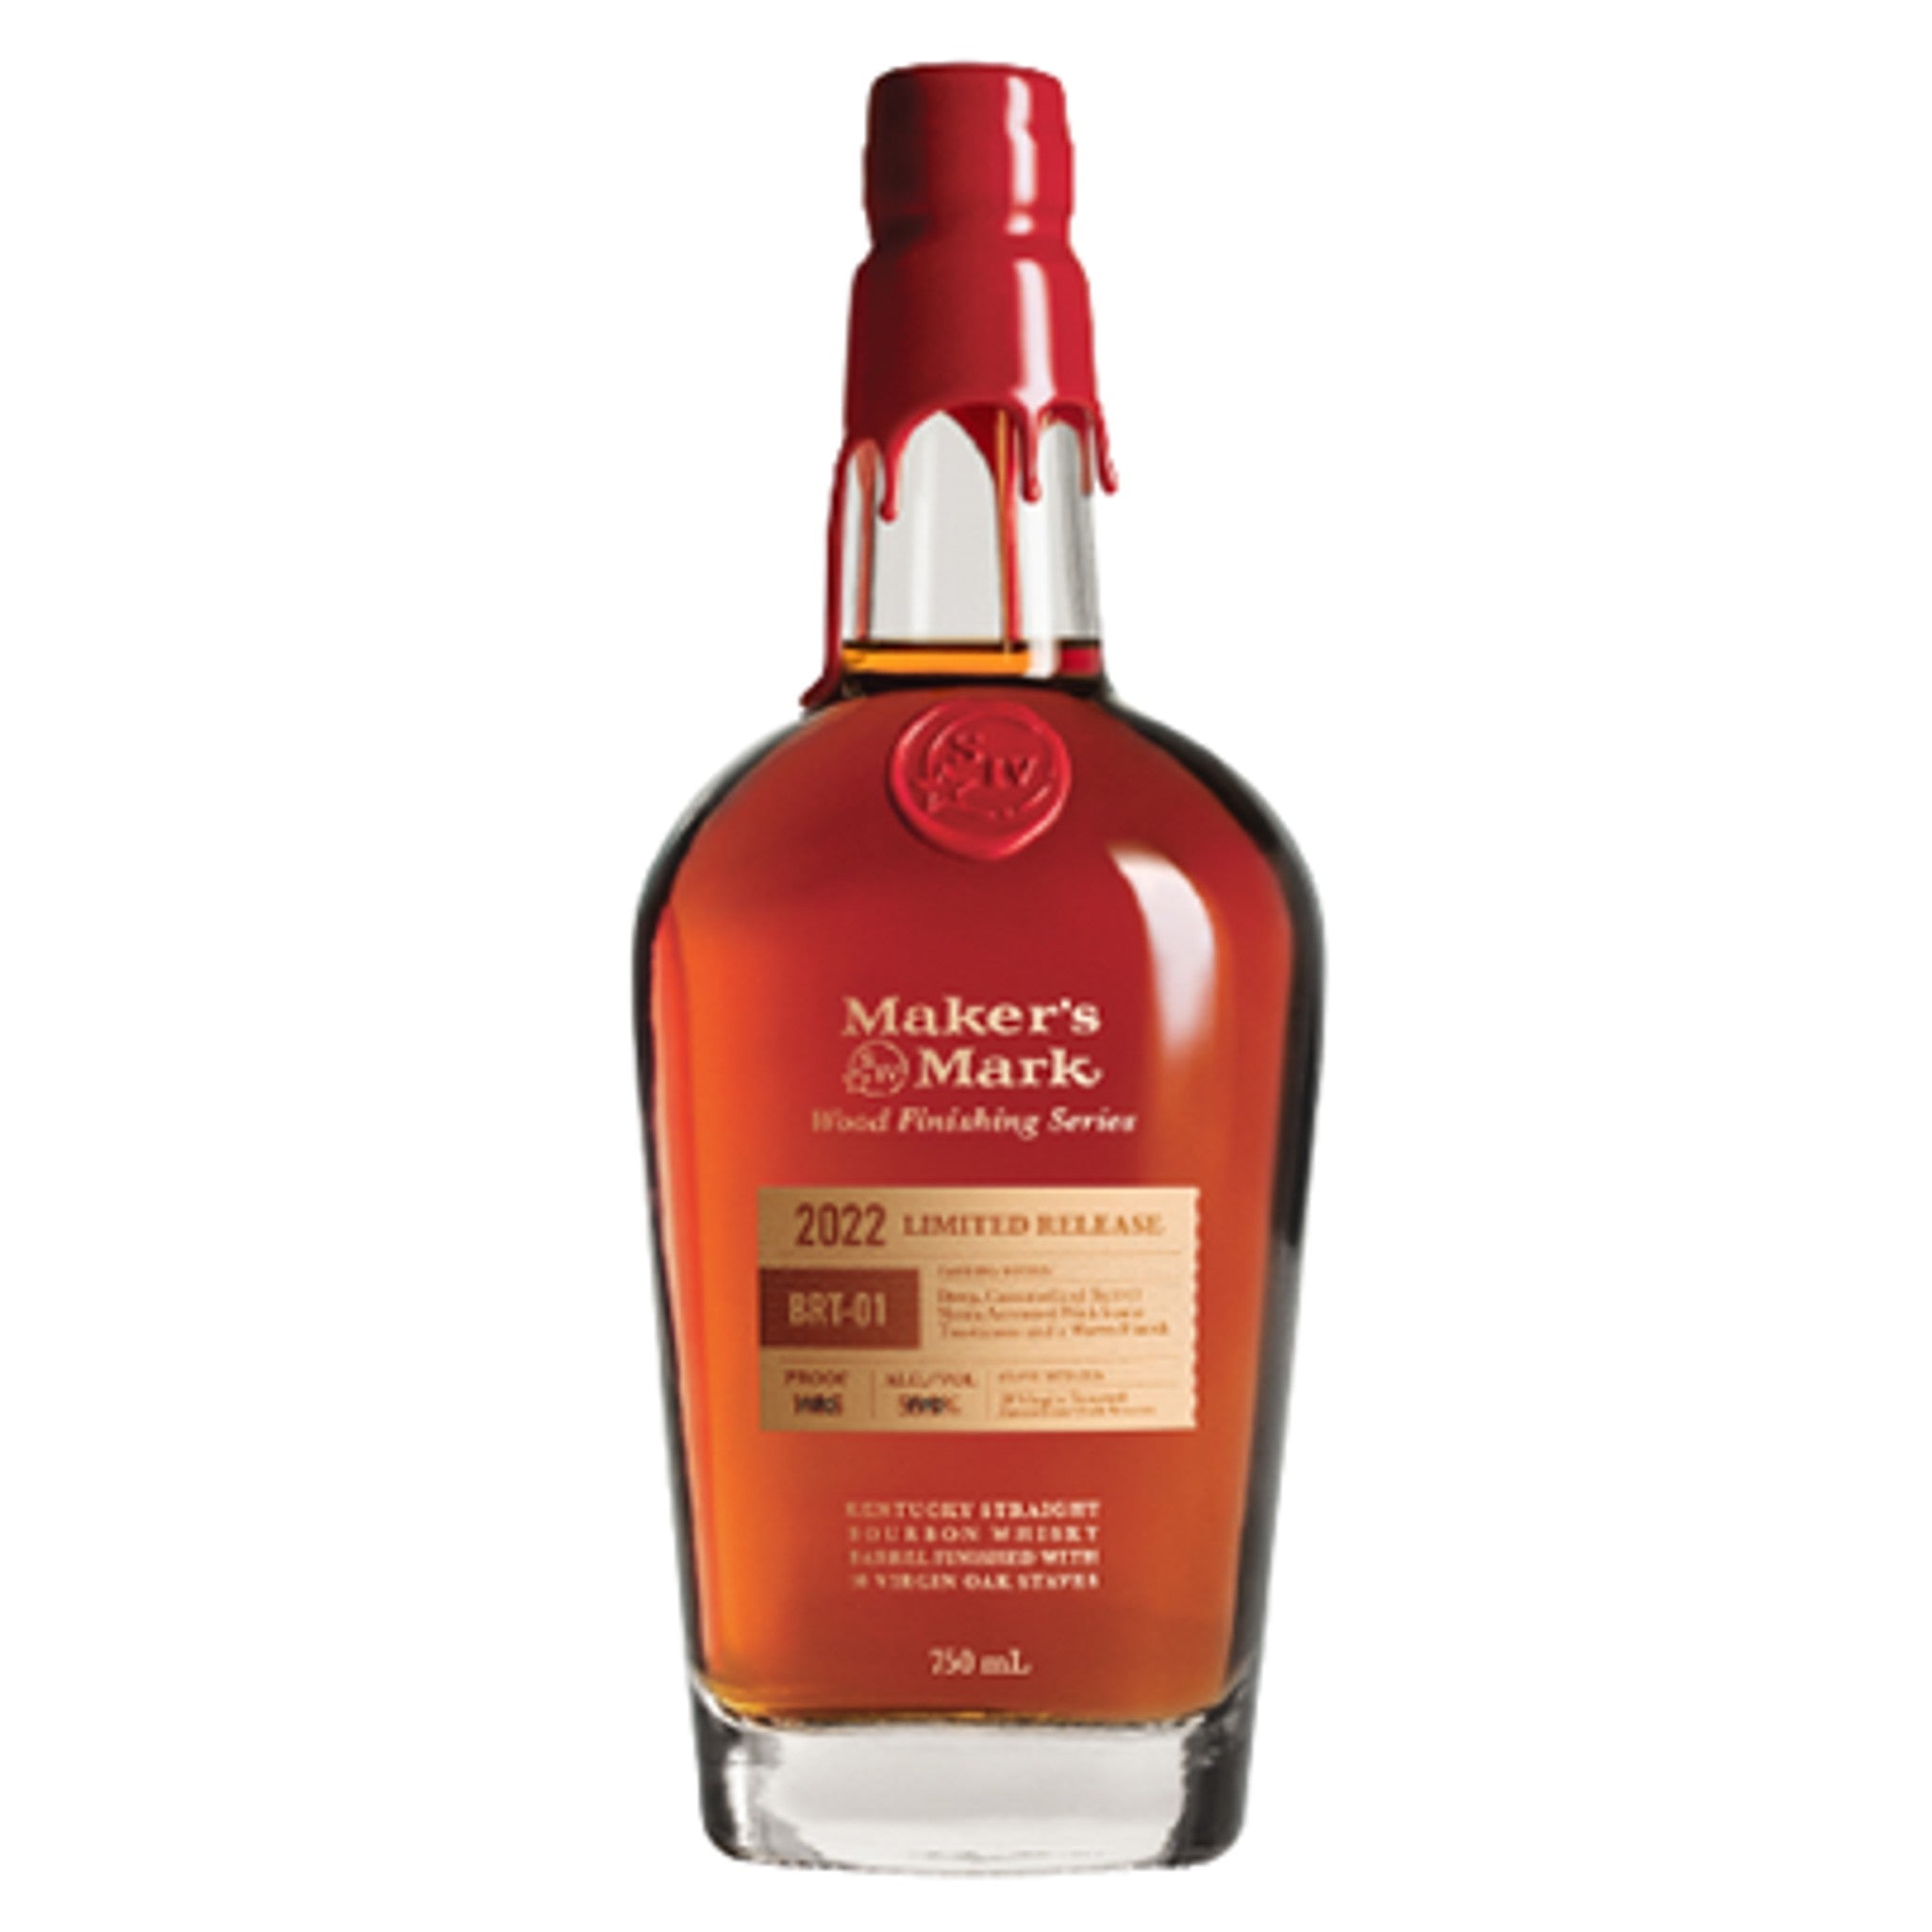 Maker's Mark 2022 BRT-01 Limited Release Kentucky Straight Bourbon Whisky (750ml)